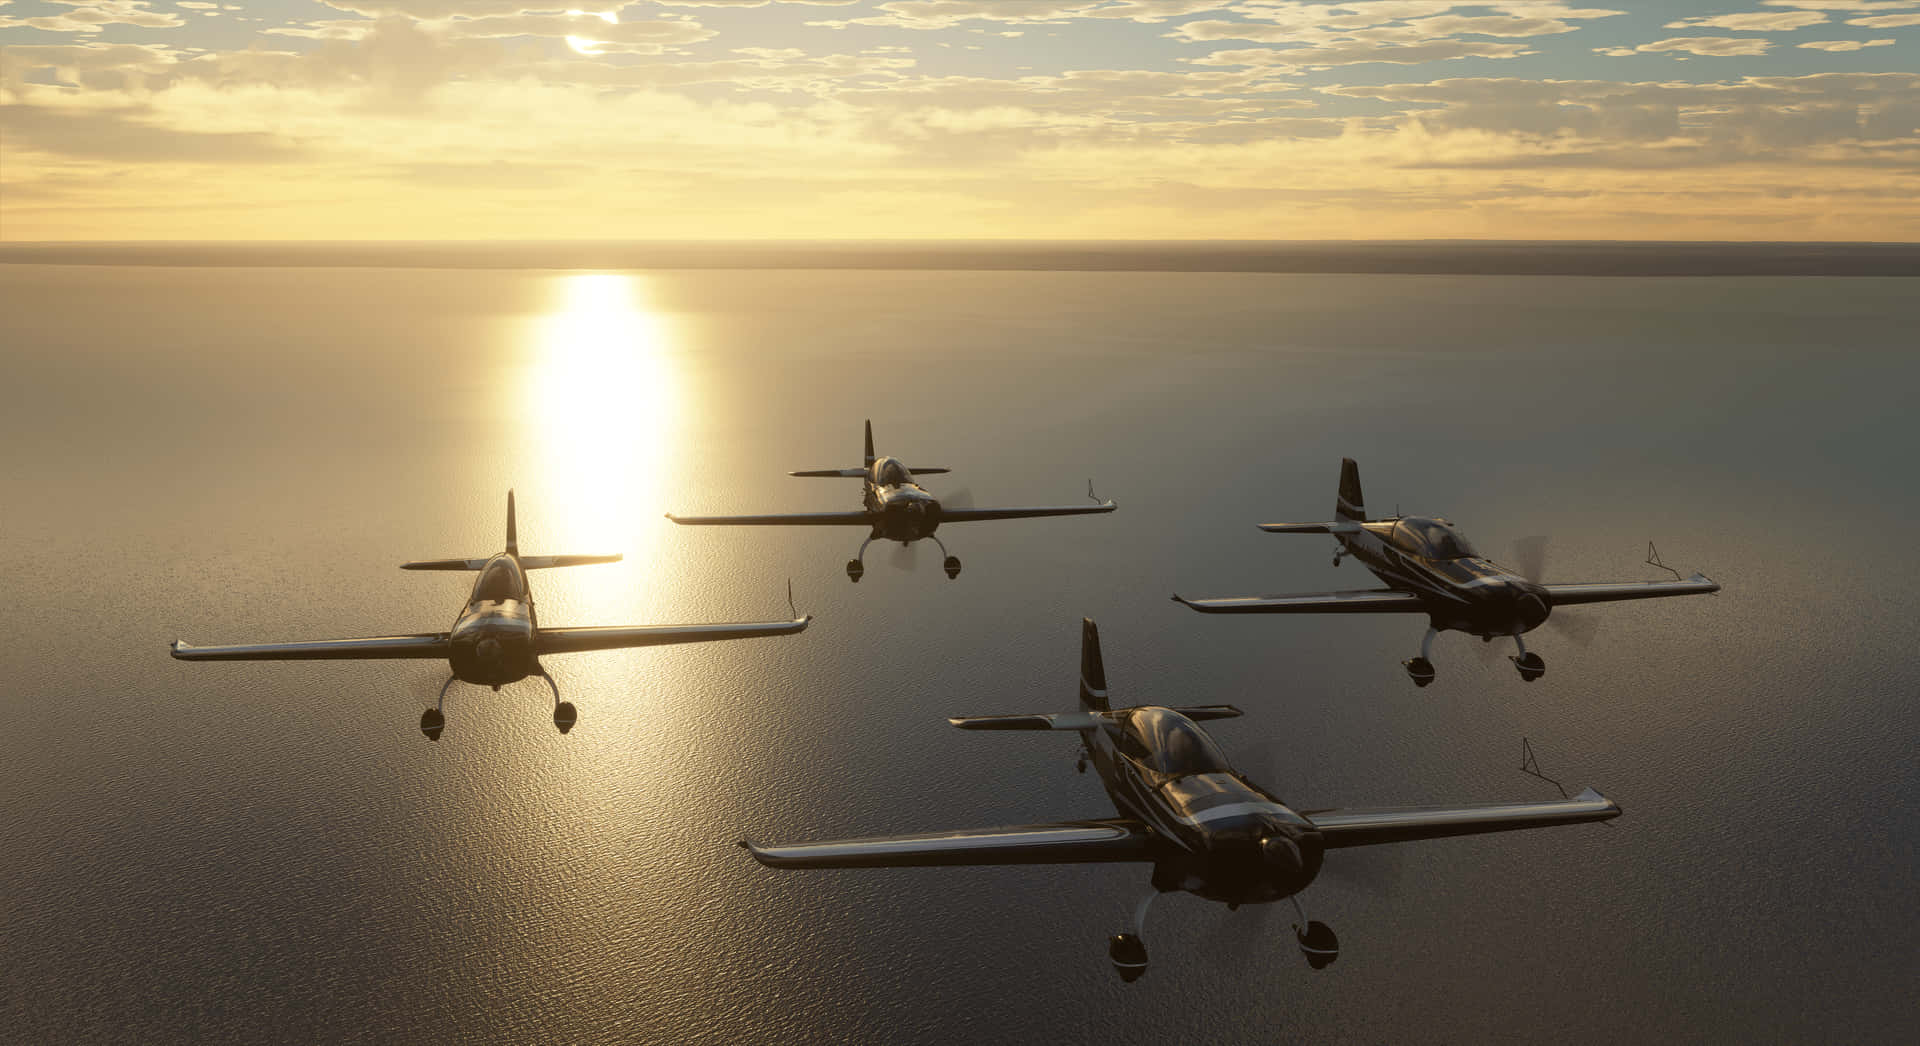 Fondode Pantalla De Microsoft Flight Simulator En 4k: Cuatro Aviones Volando Juntos.